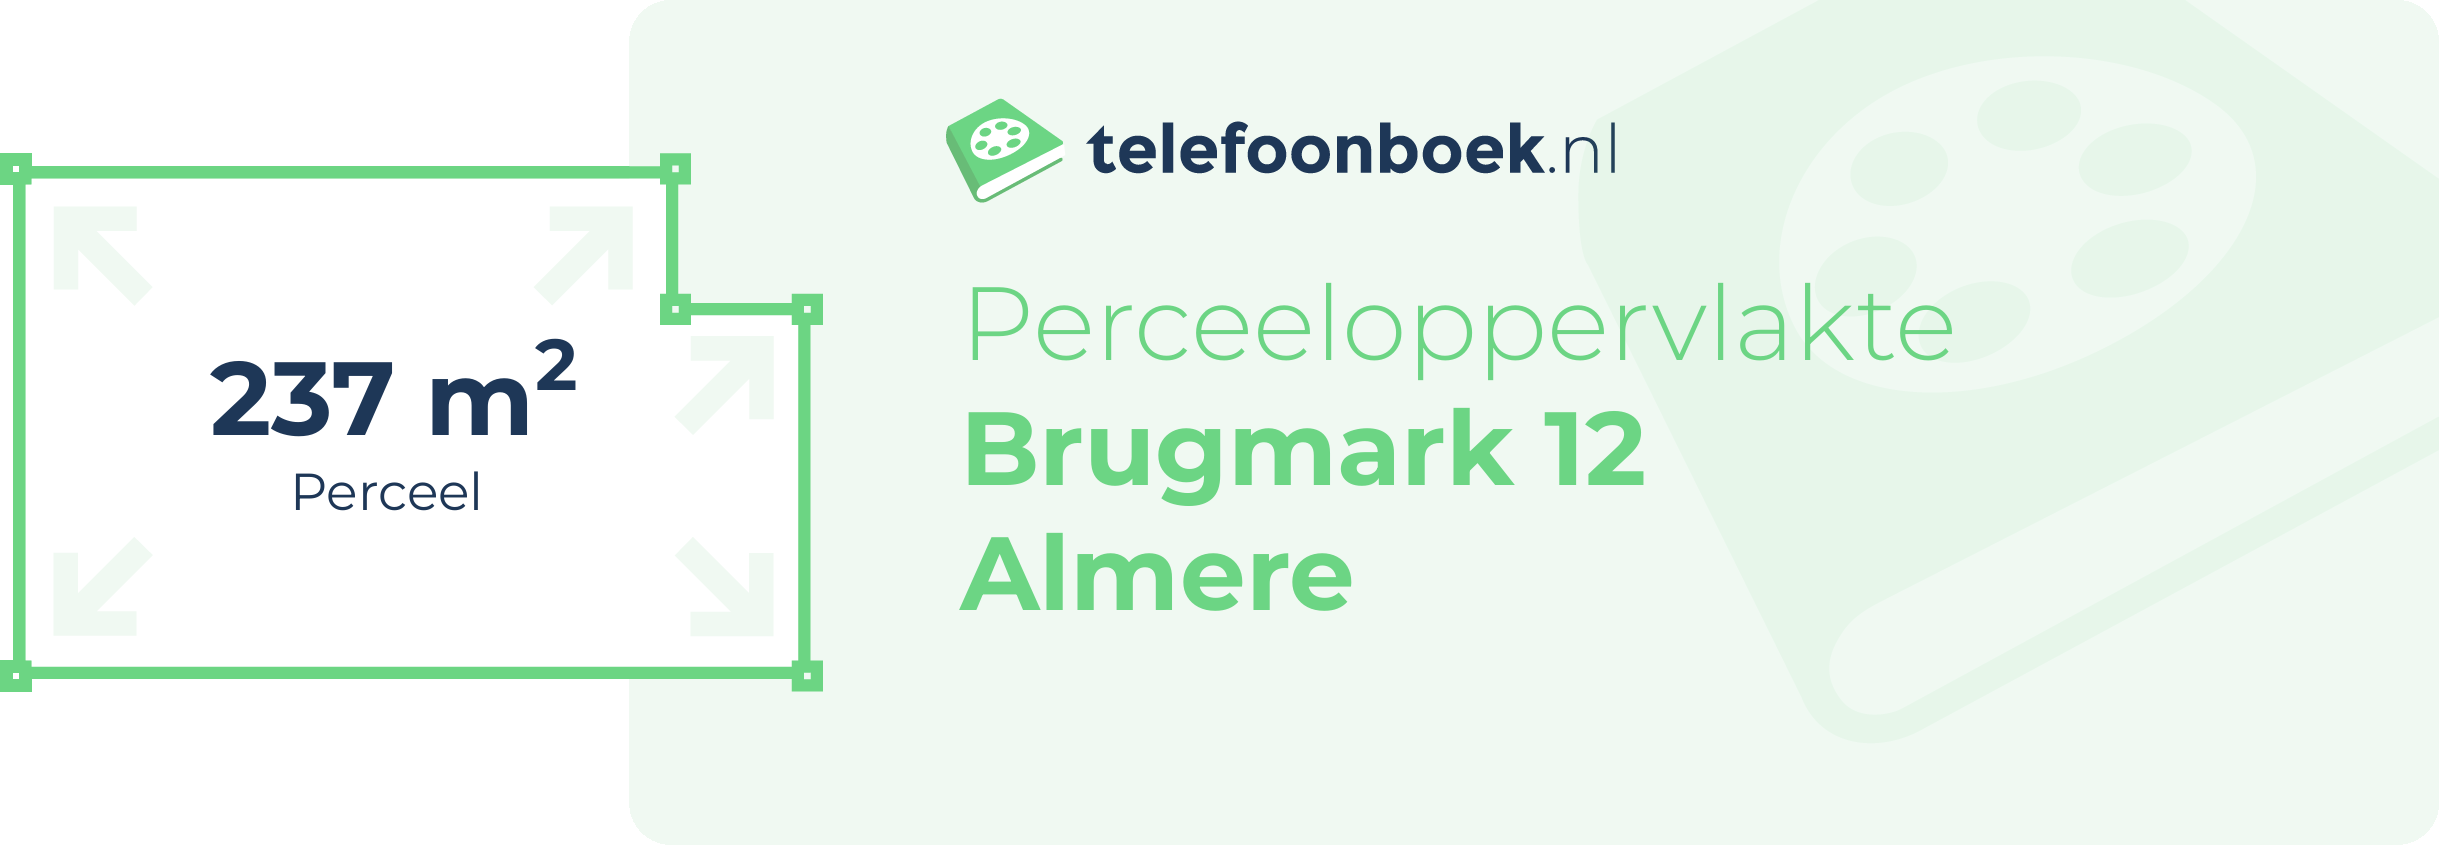 Perceeloppervlakte Brugmark 12 Almere